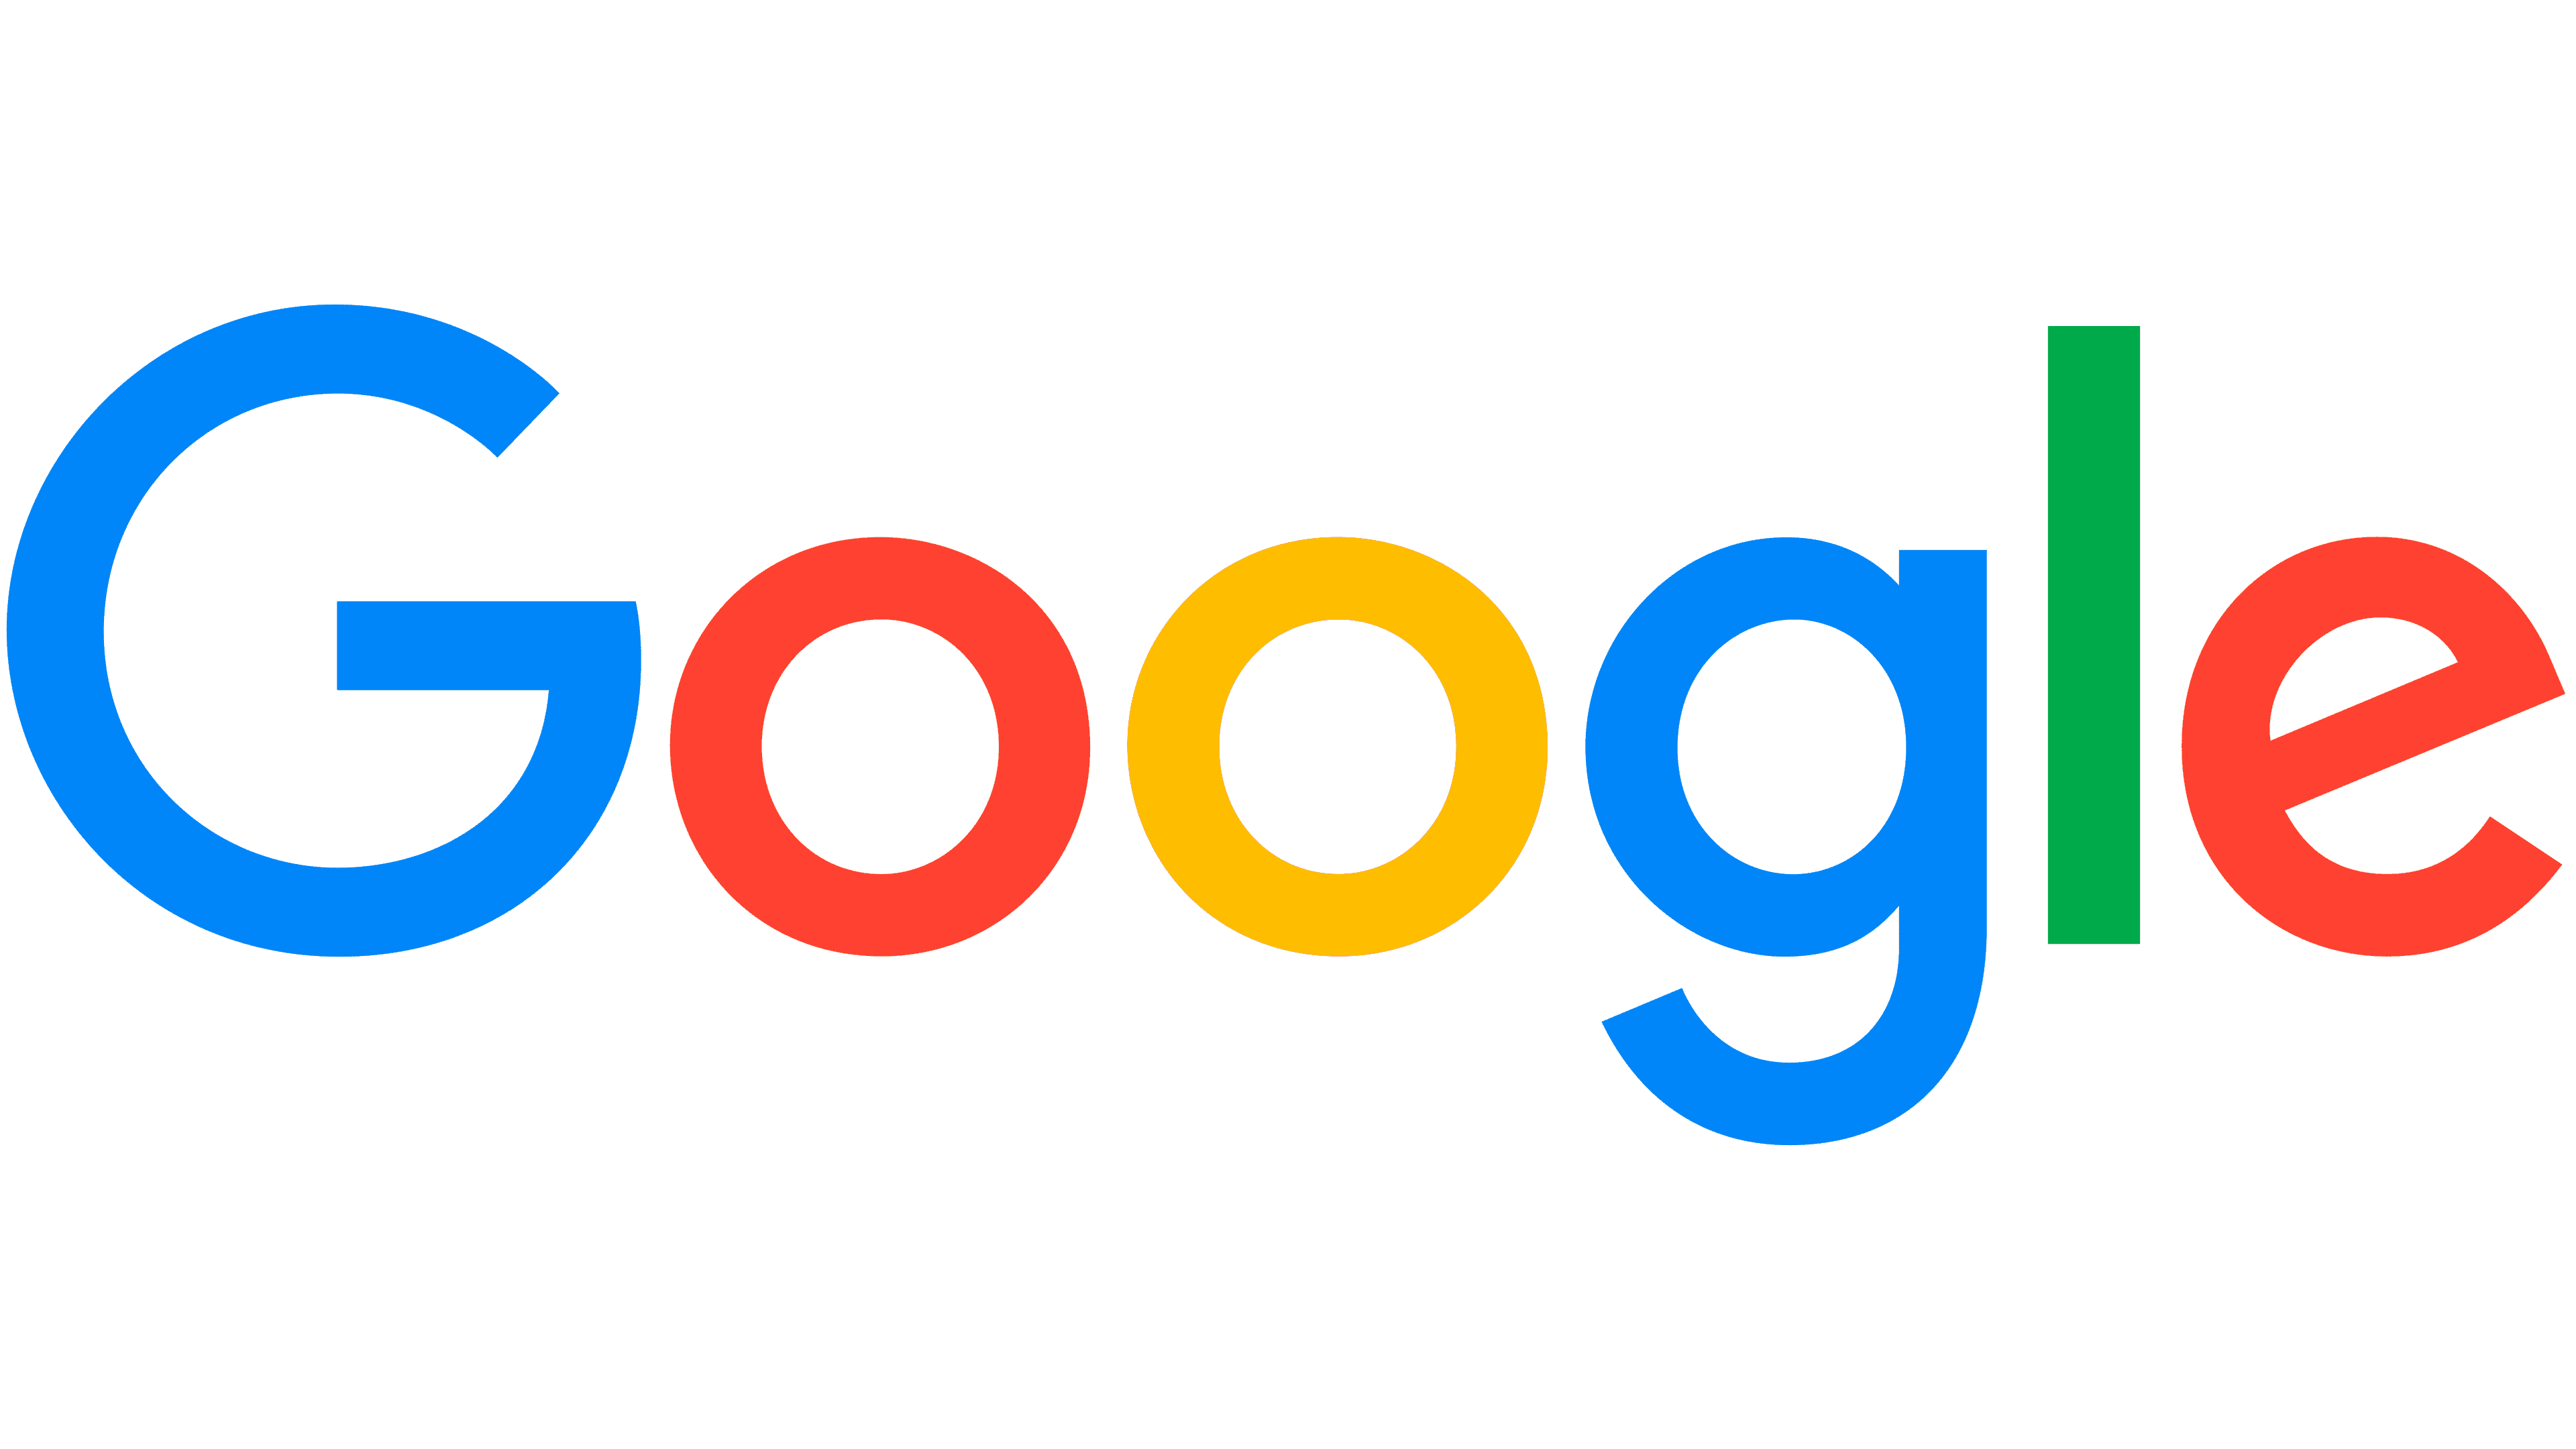 โลโก้และสัญลักษณ์ Google, ความหมาย, ประวัติ, PNG, แบรนด์